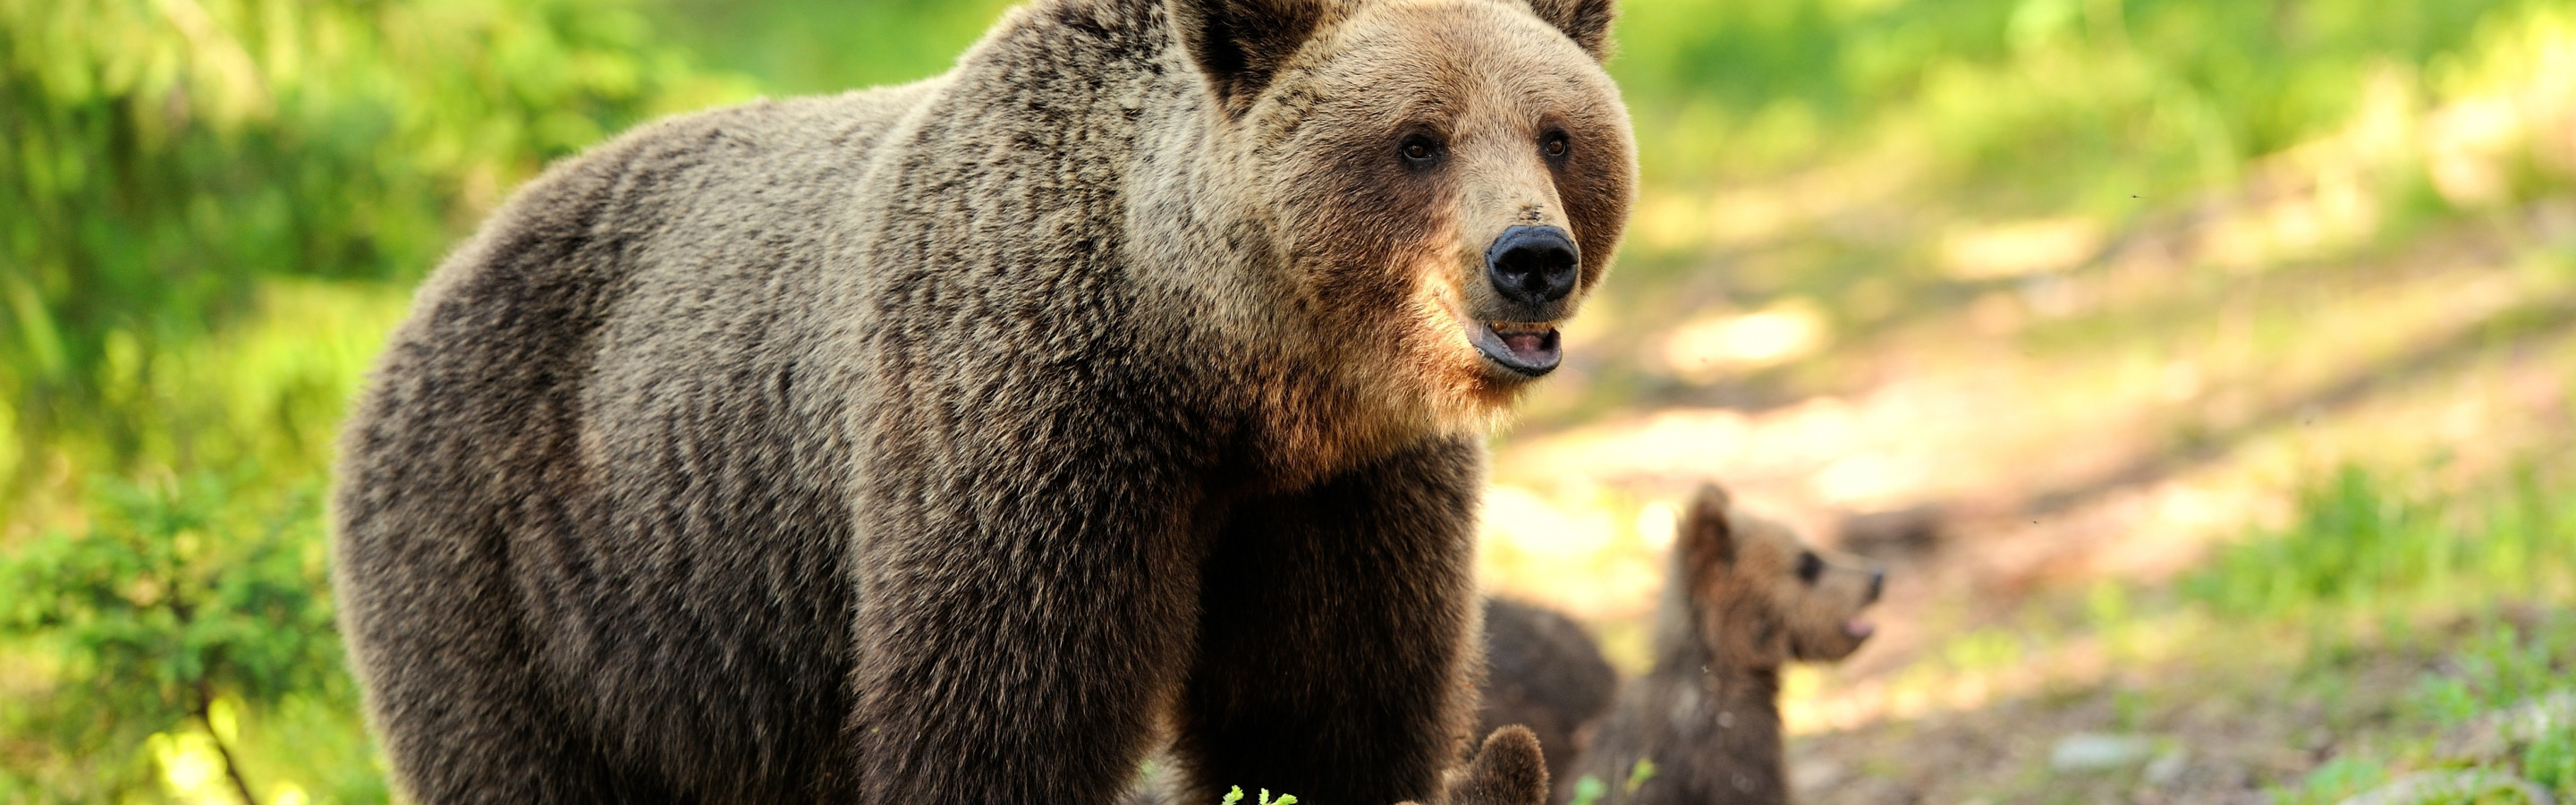 Фото на рабочий стол медведь в лесу с ягодами. Лен белый медведь в лесу 150 см, Беларусь. Очень широкие картинки красивые природа и животные. Собака вывела из леса медведей